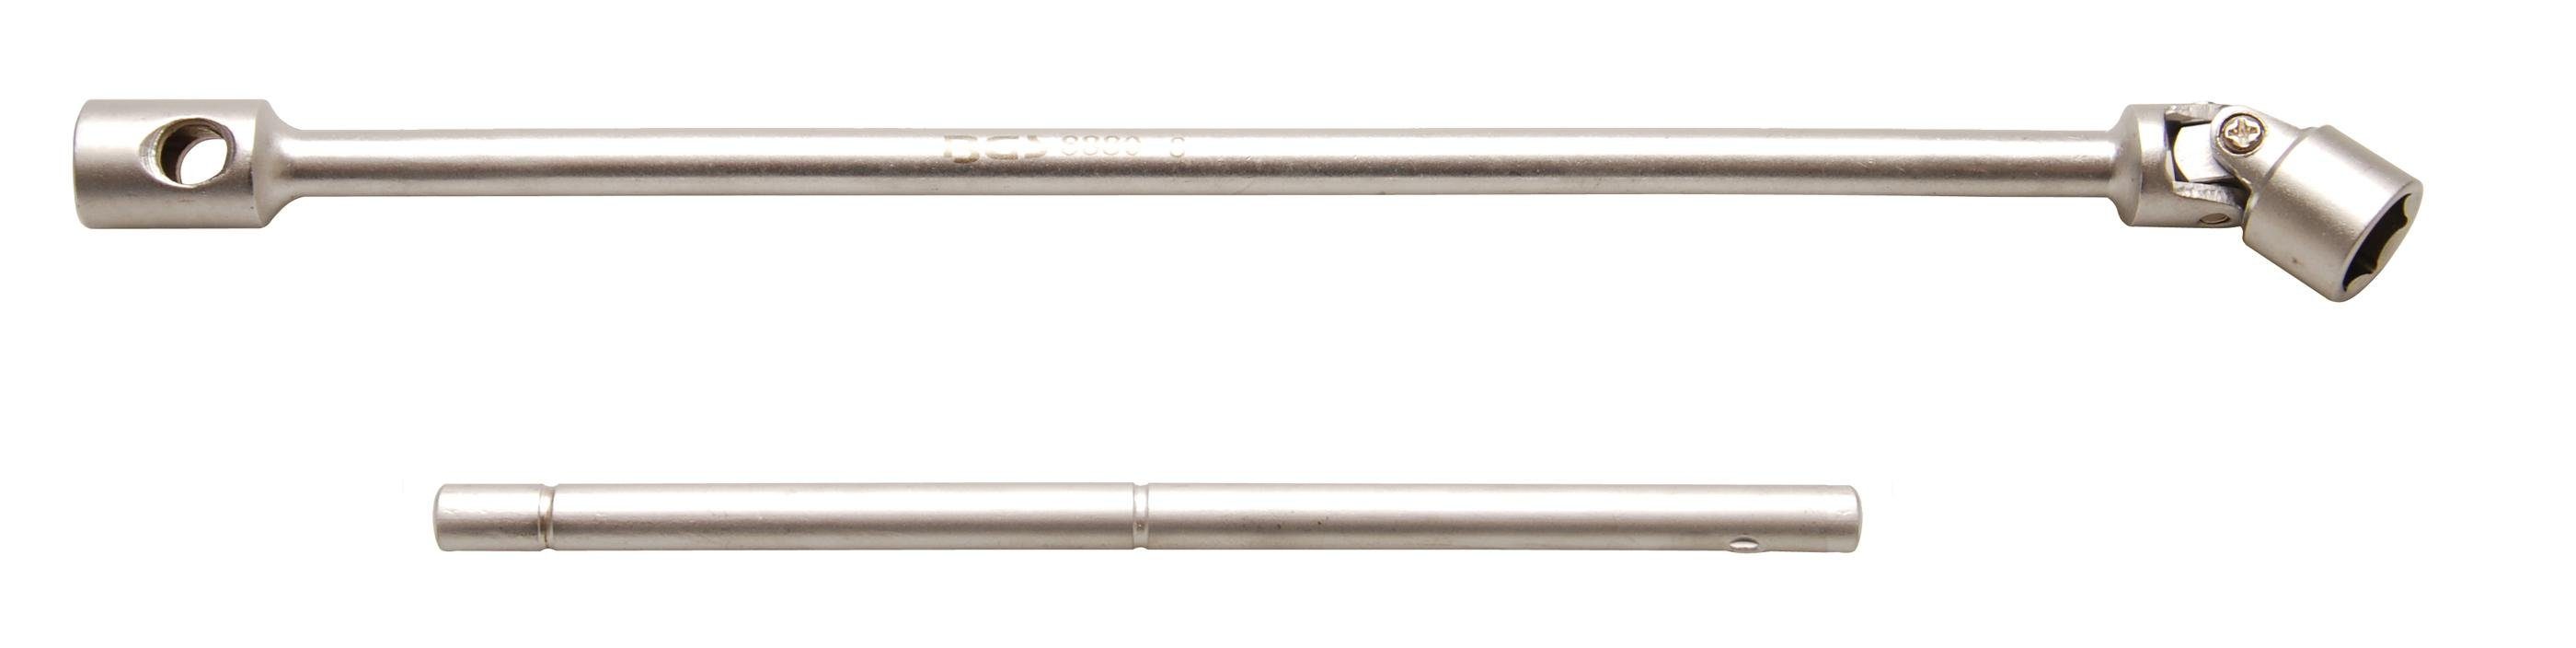 BGS technic Steckschlüssel Gelenk-Steckschlüssel, 15 mm